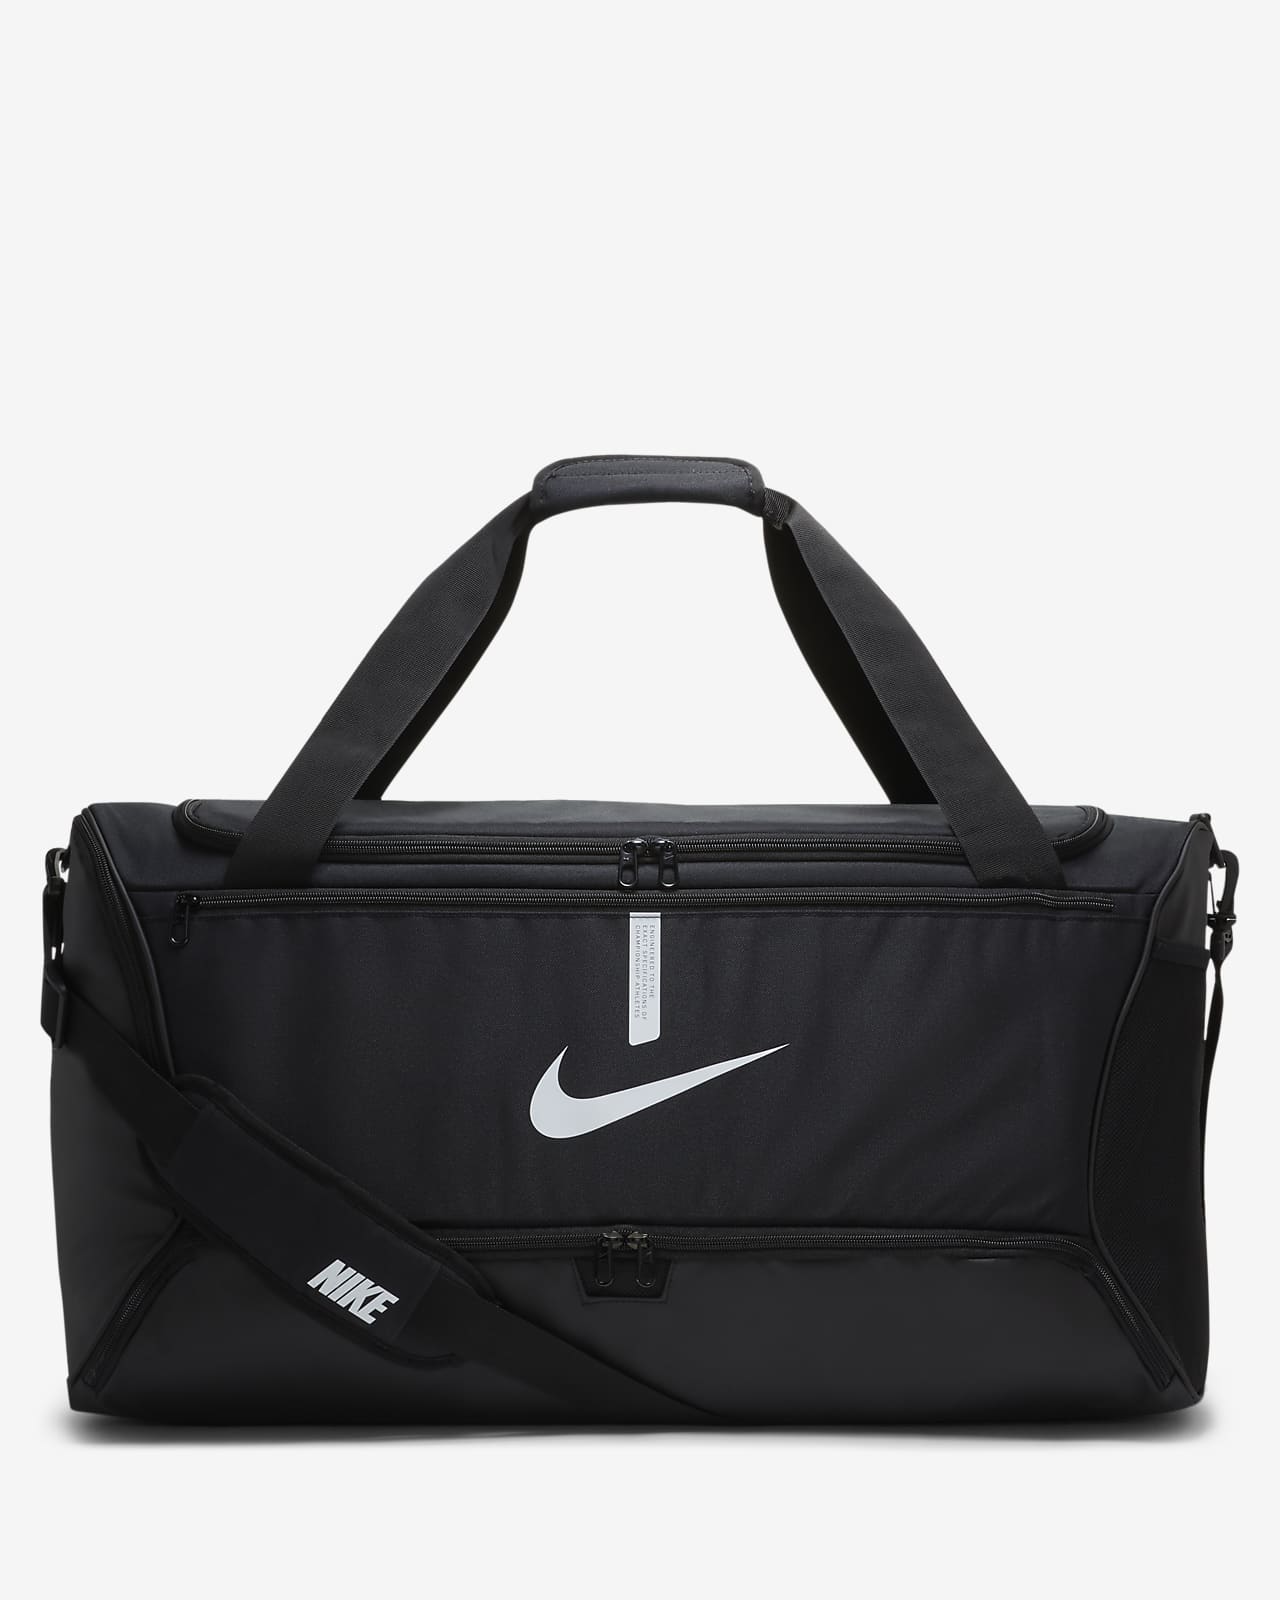 Τσάντα γυμναστηρίου για ποδόσφαιρο Nike Academy Team (μέγεθος Large, 95 L)